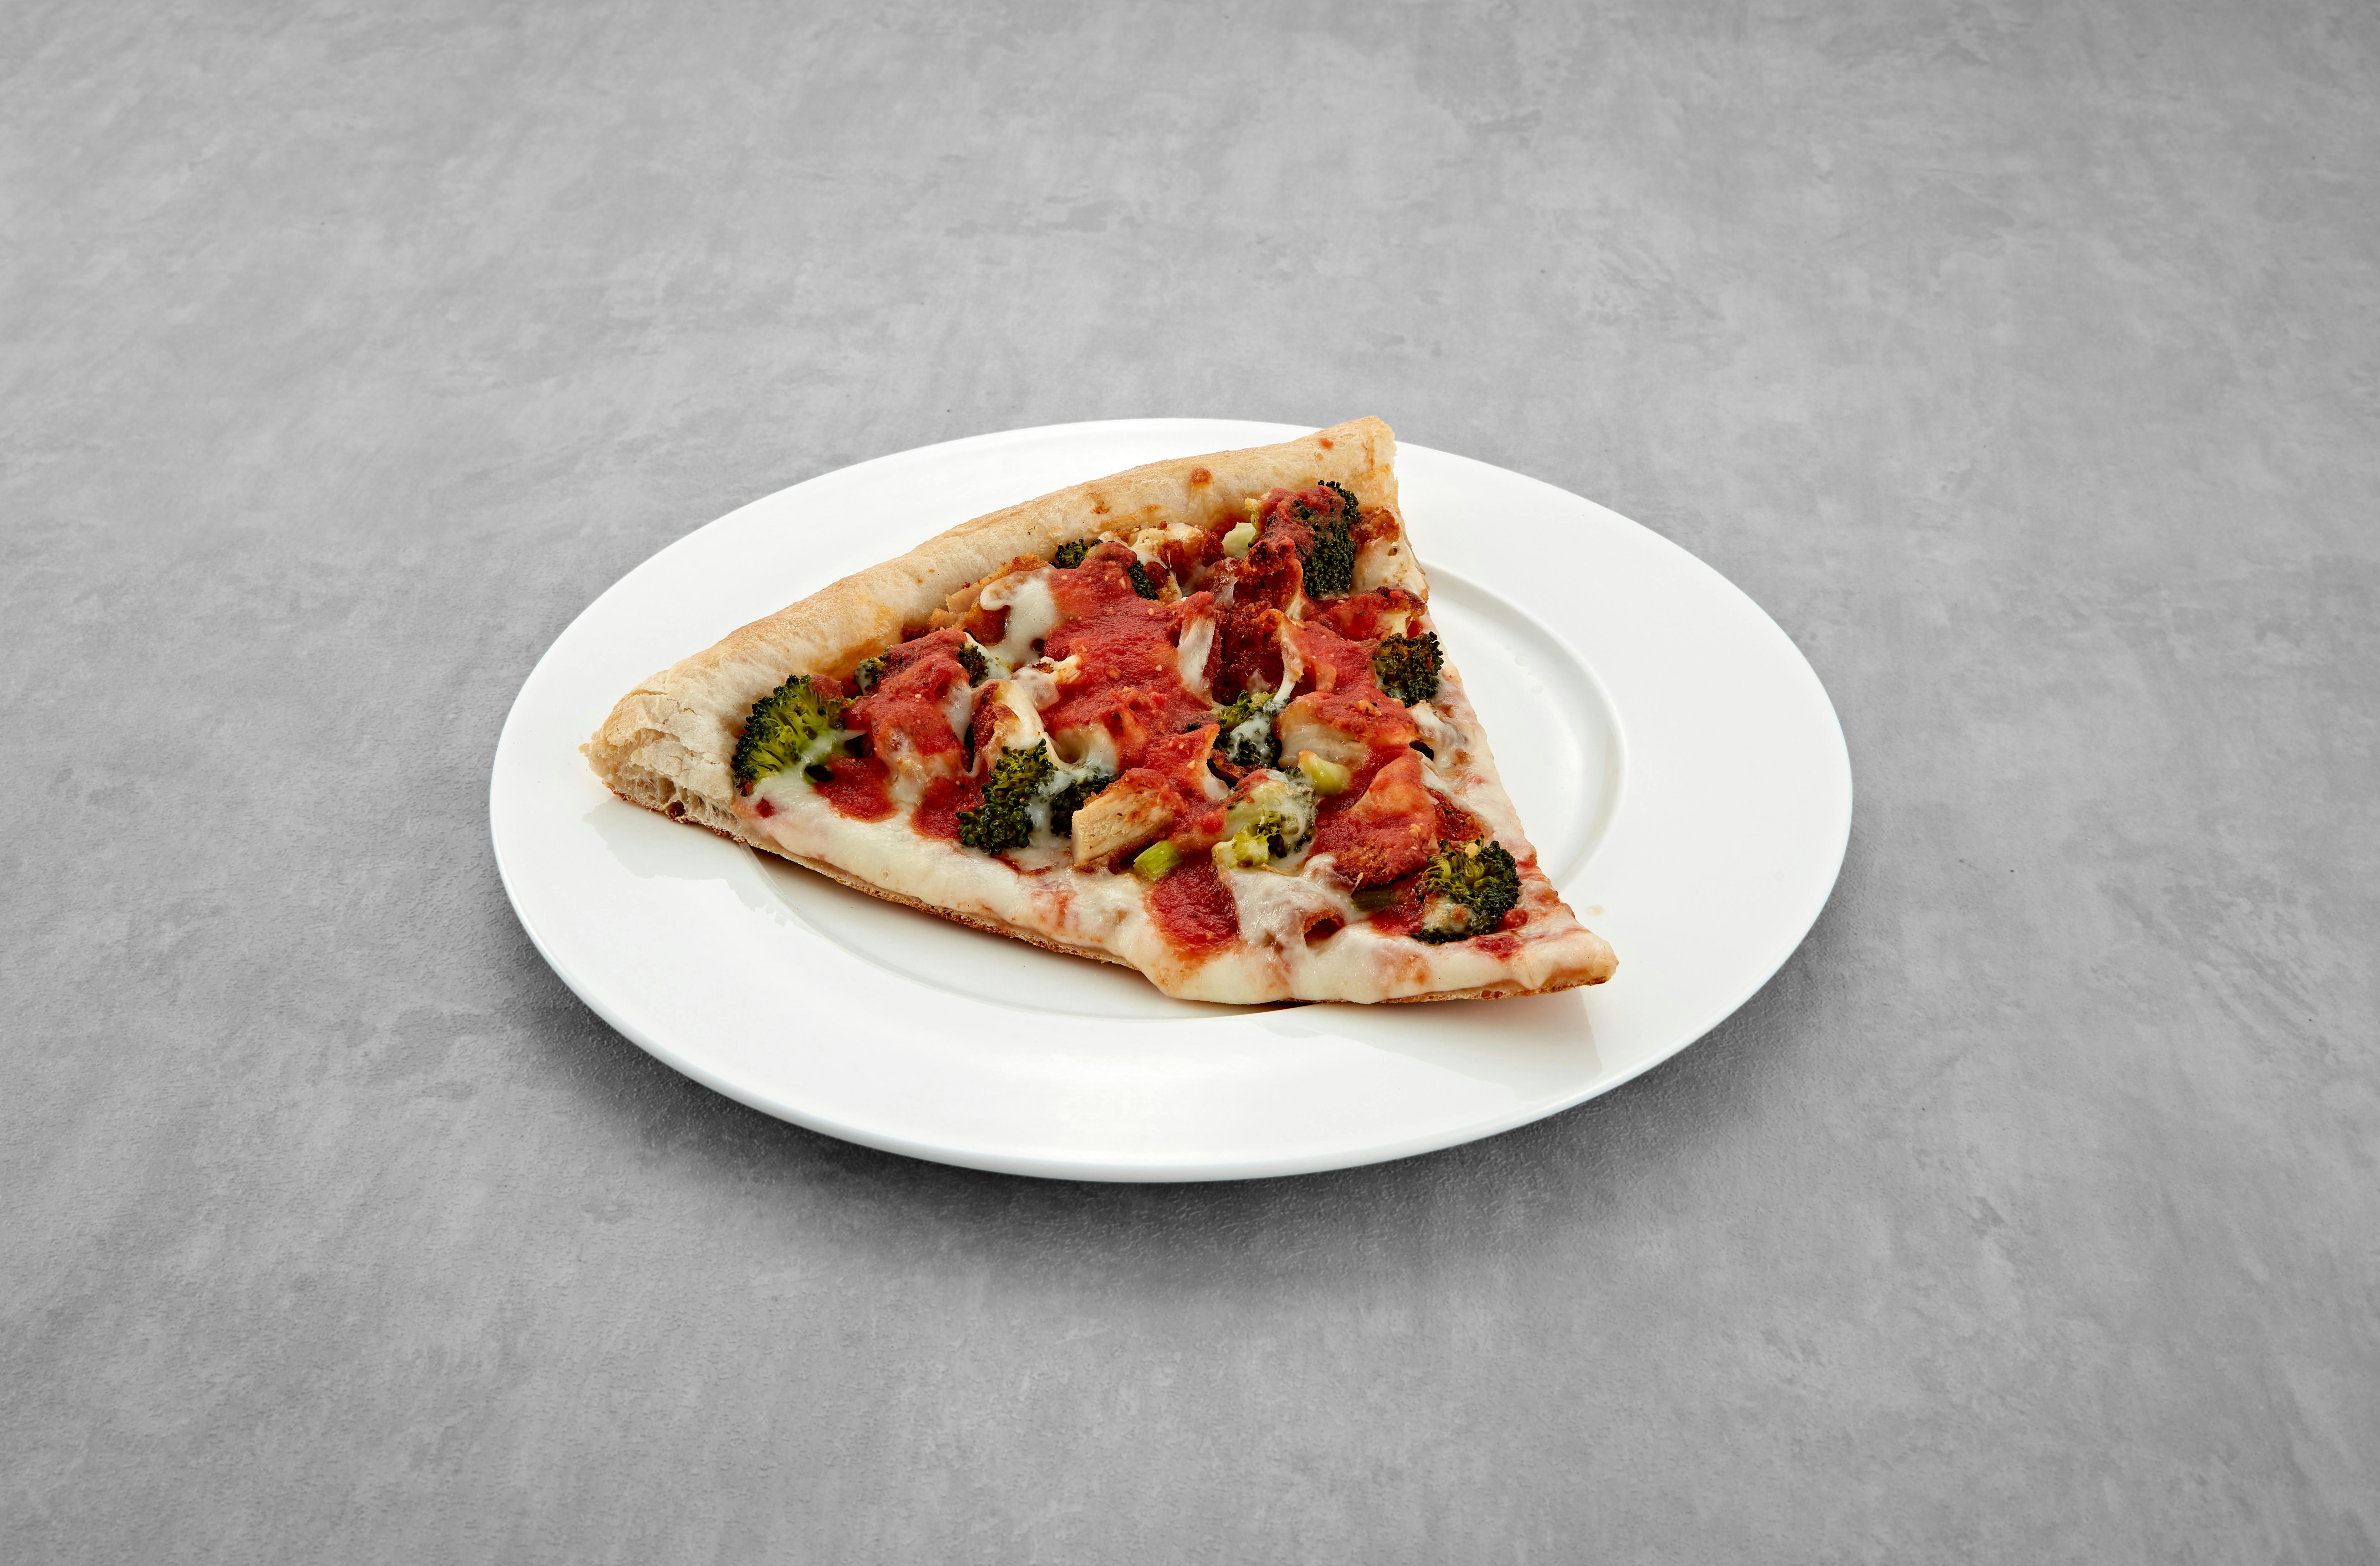 Chicken & Broccoli Pizza Slice from Mario's Pizzeria in Seaford, NY